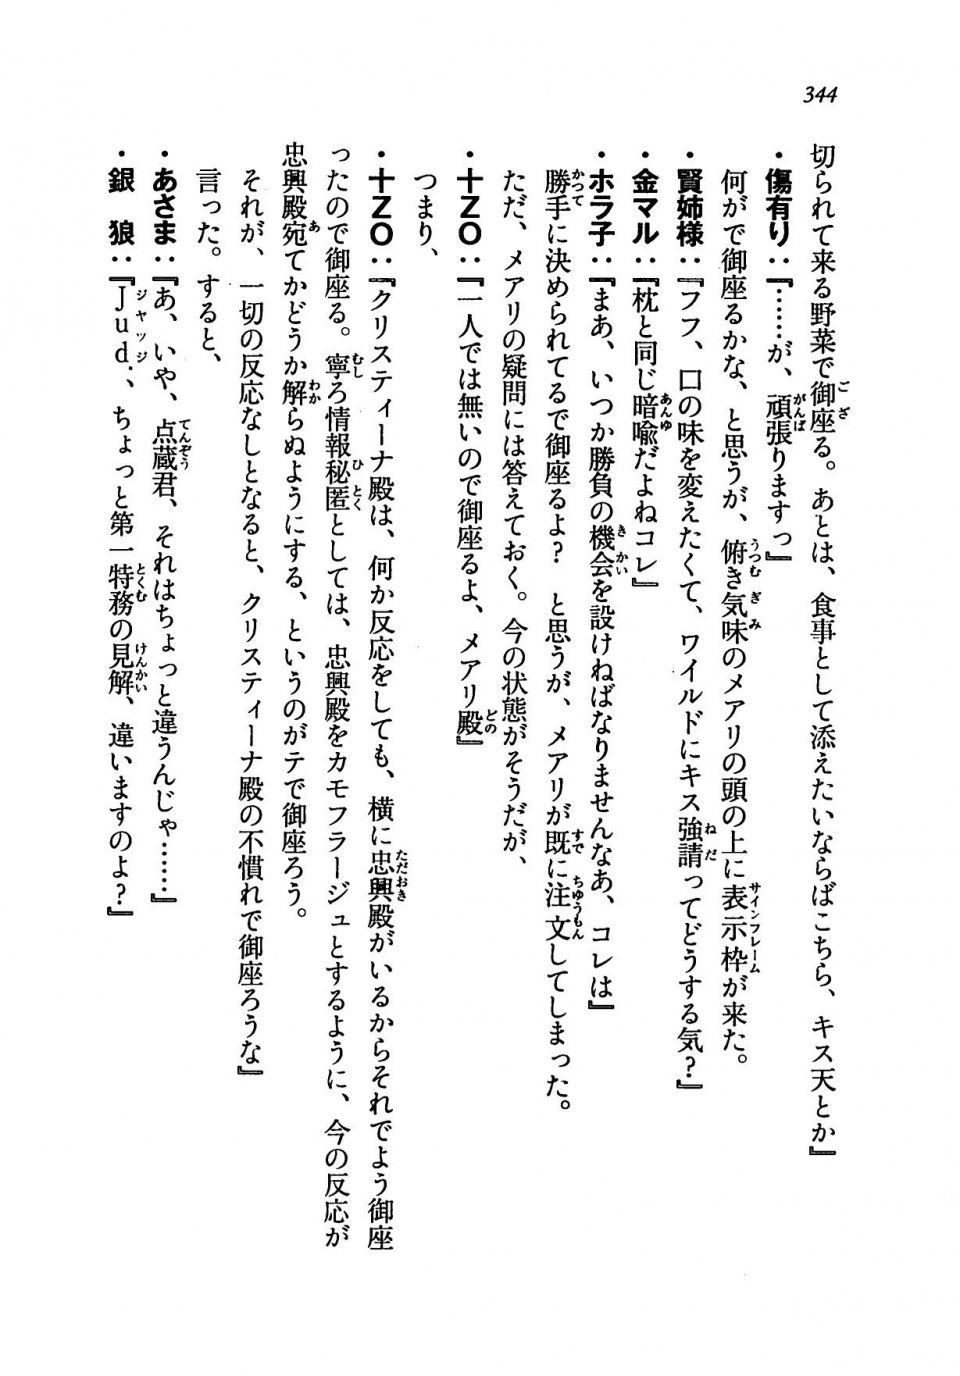 Kyoukai Senjou no Horizon LN Vol 19(8A) - Photo #344